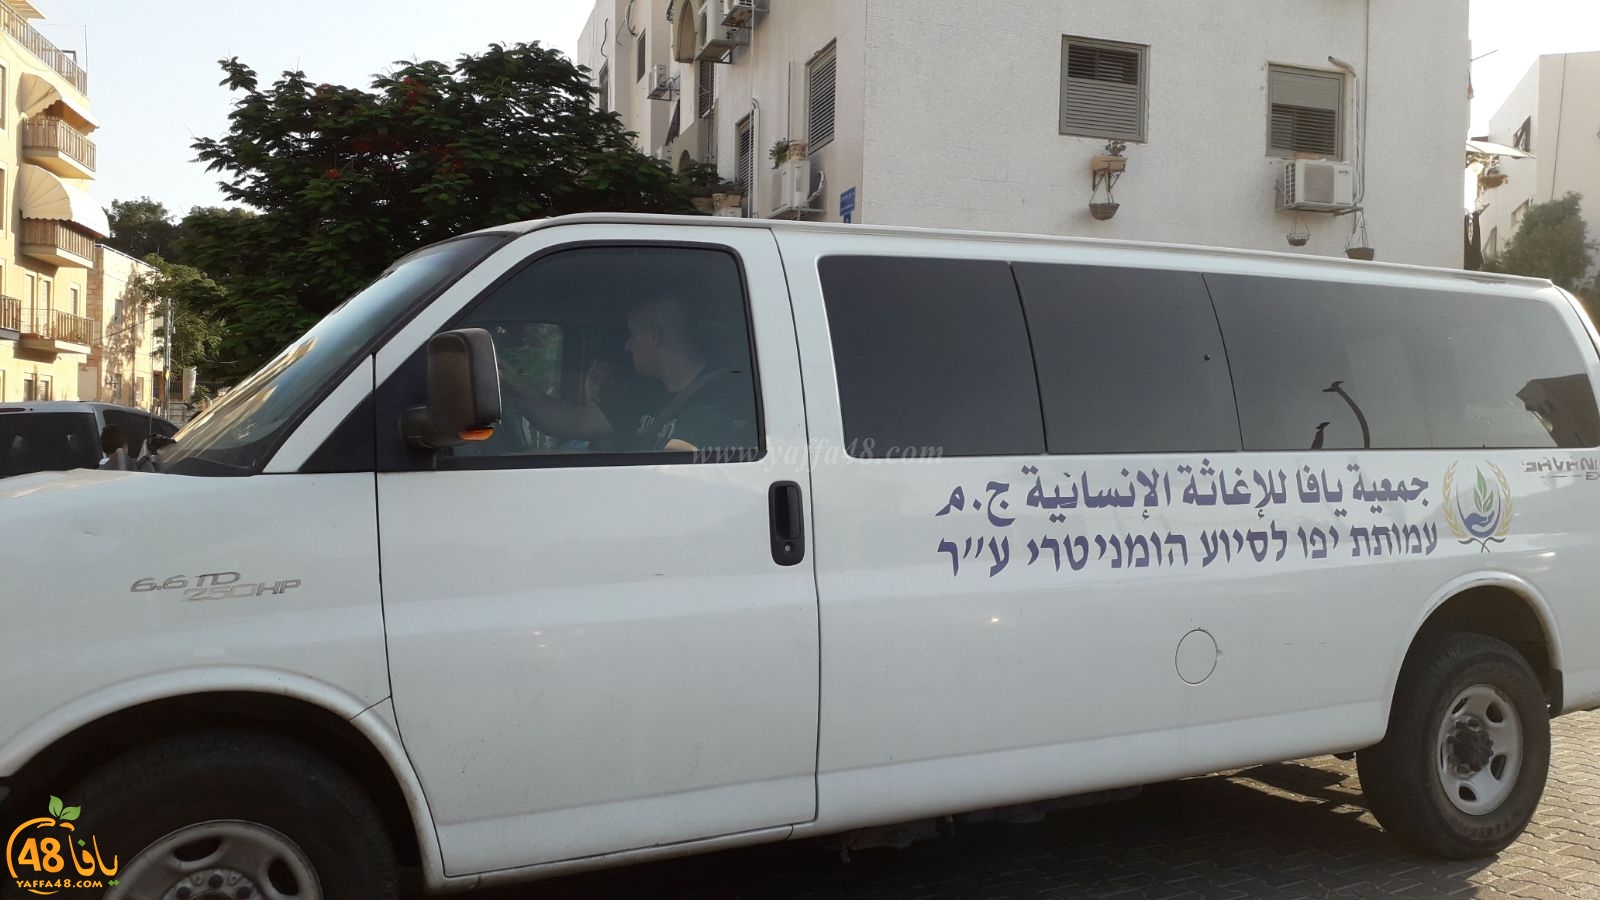  سيارة جمعية يافا تتجول في شوارع المدينة لجمع أموال الزكاة من الأهالي 